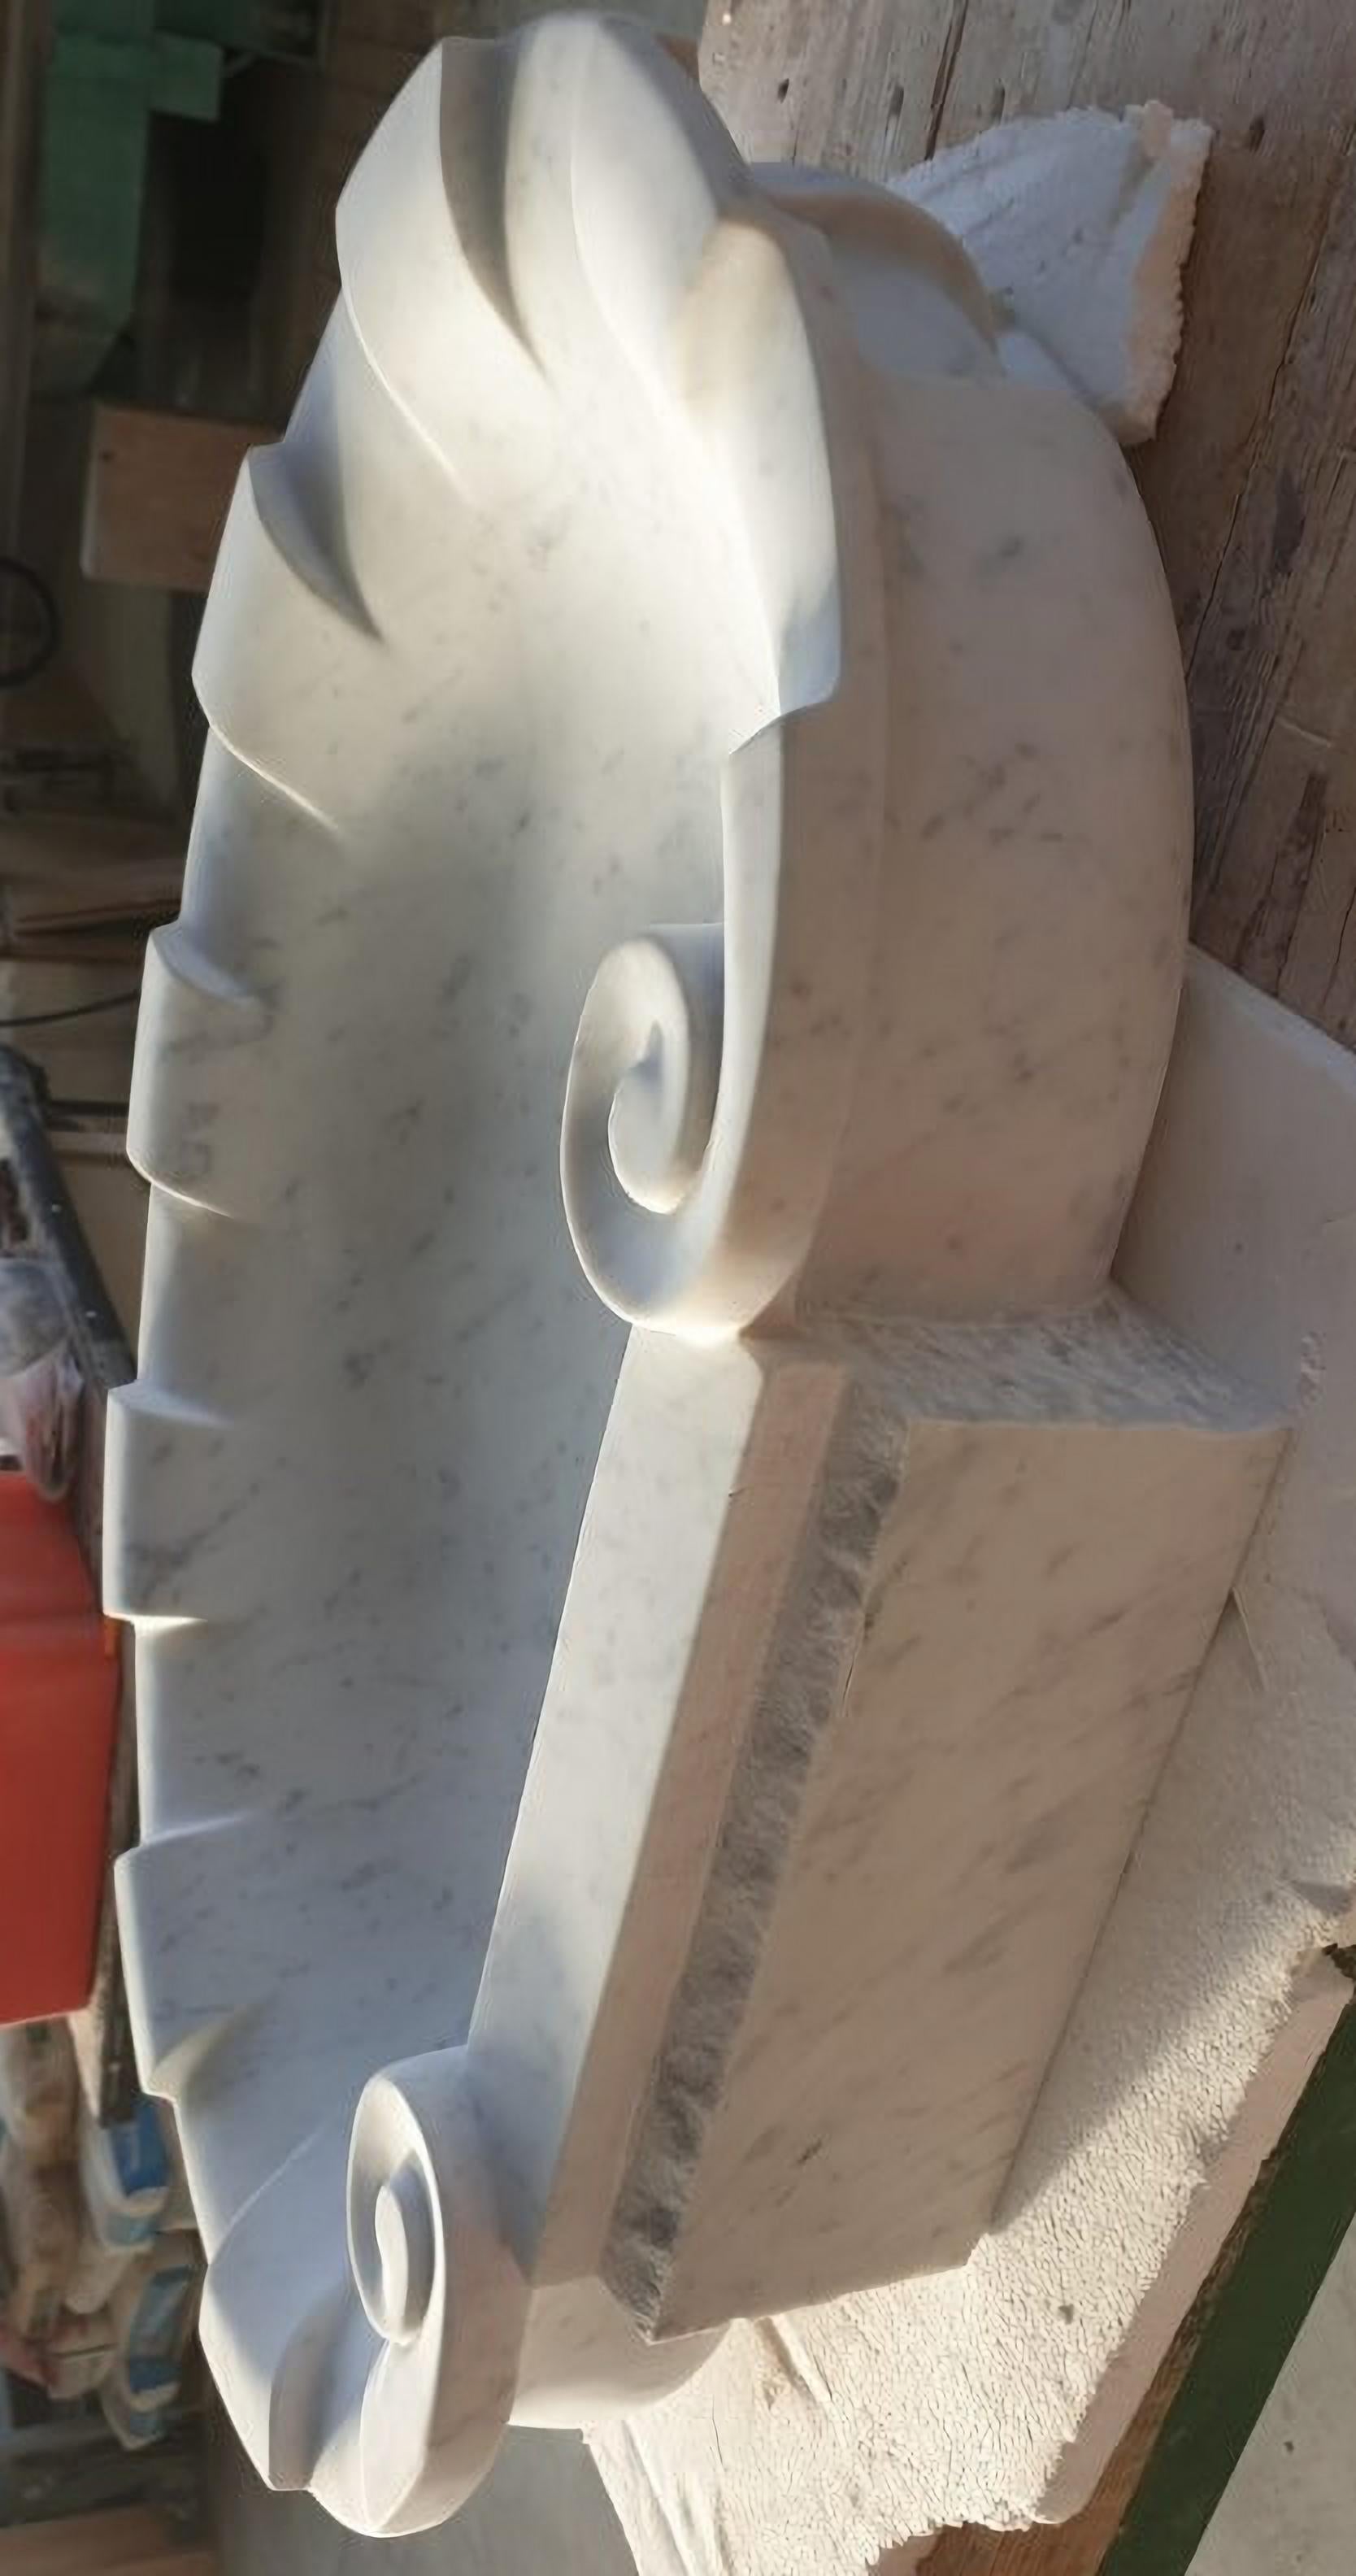 GROOVED SHELL WHITE CARRARA MARBLE SINK aus dem 20. Jahrhundert

Muschelförmiges Waschbecken aus weißem Carrara-Marmor

BREITE 76.5cm
Innentiefe des Beckens 8 cm
DICKTHEIT 14cm
GEWICHT 30Kg
MATERIAL Weißer Carraramarmor / Weißer